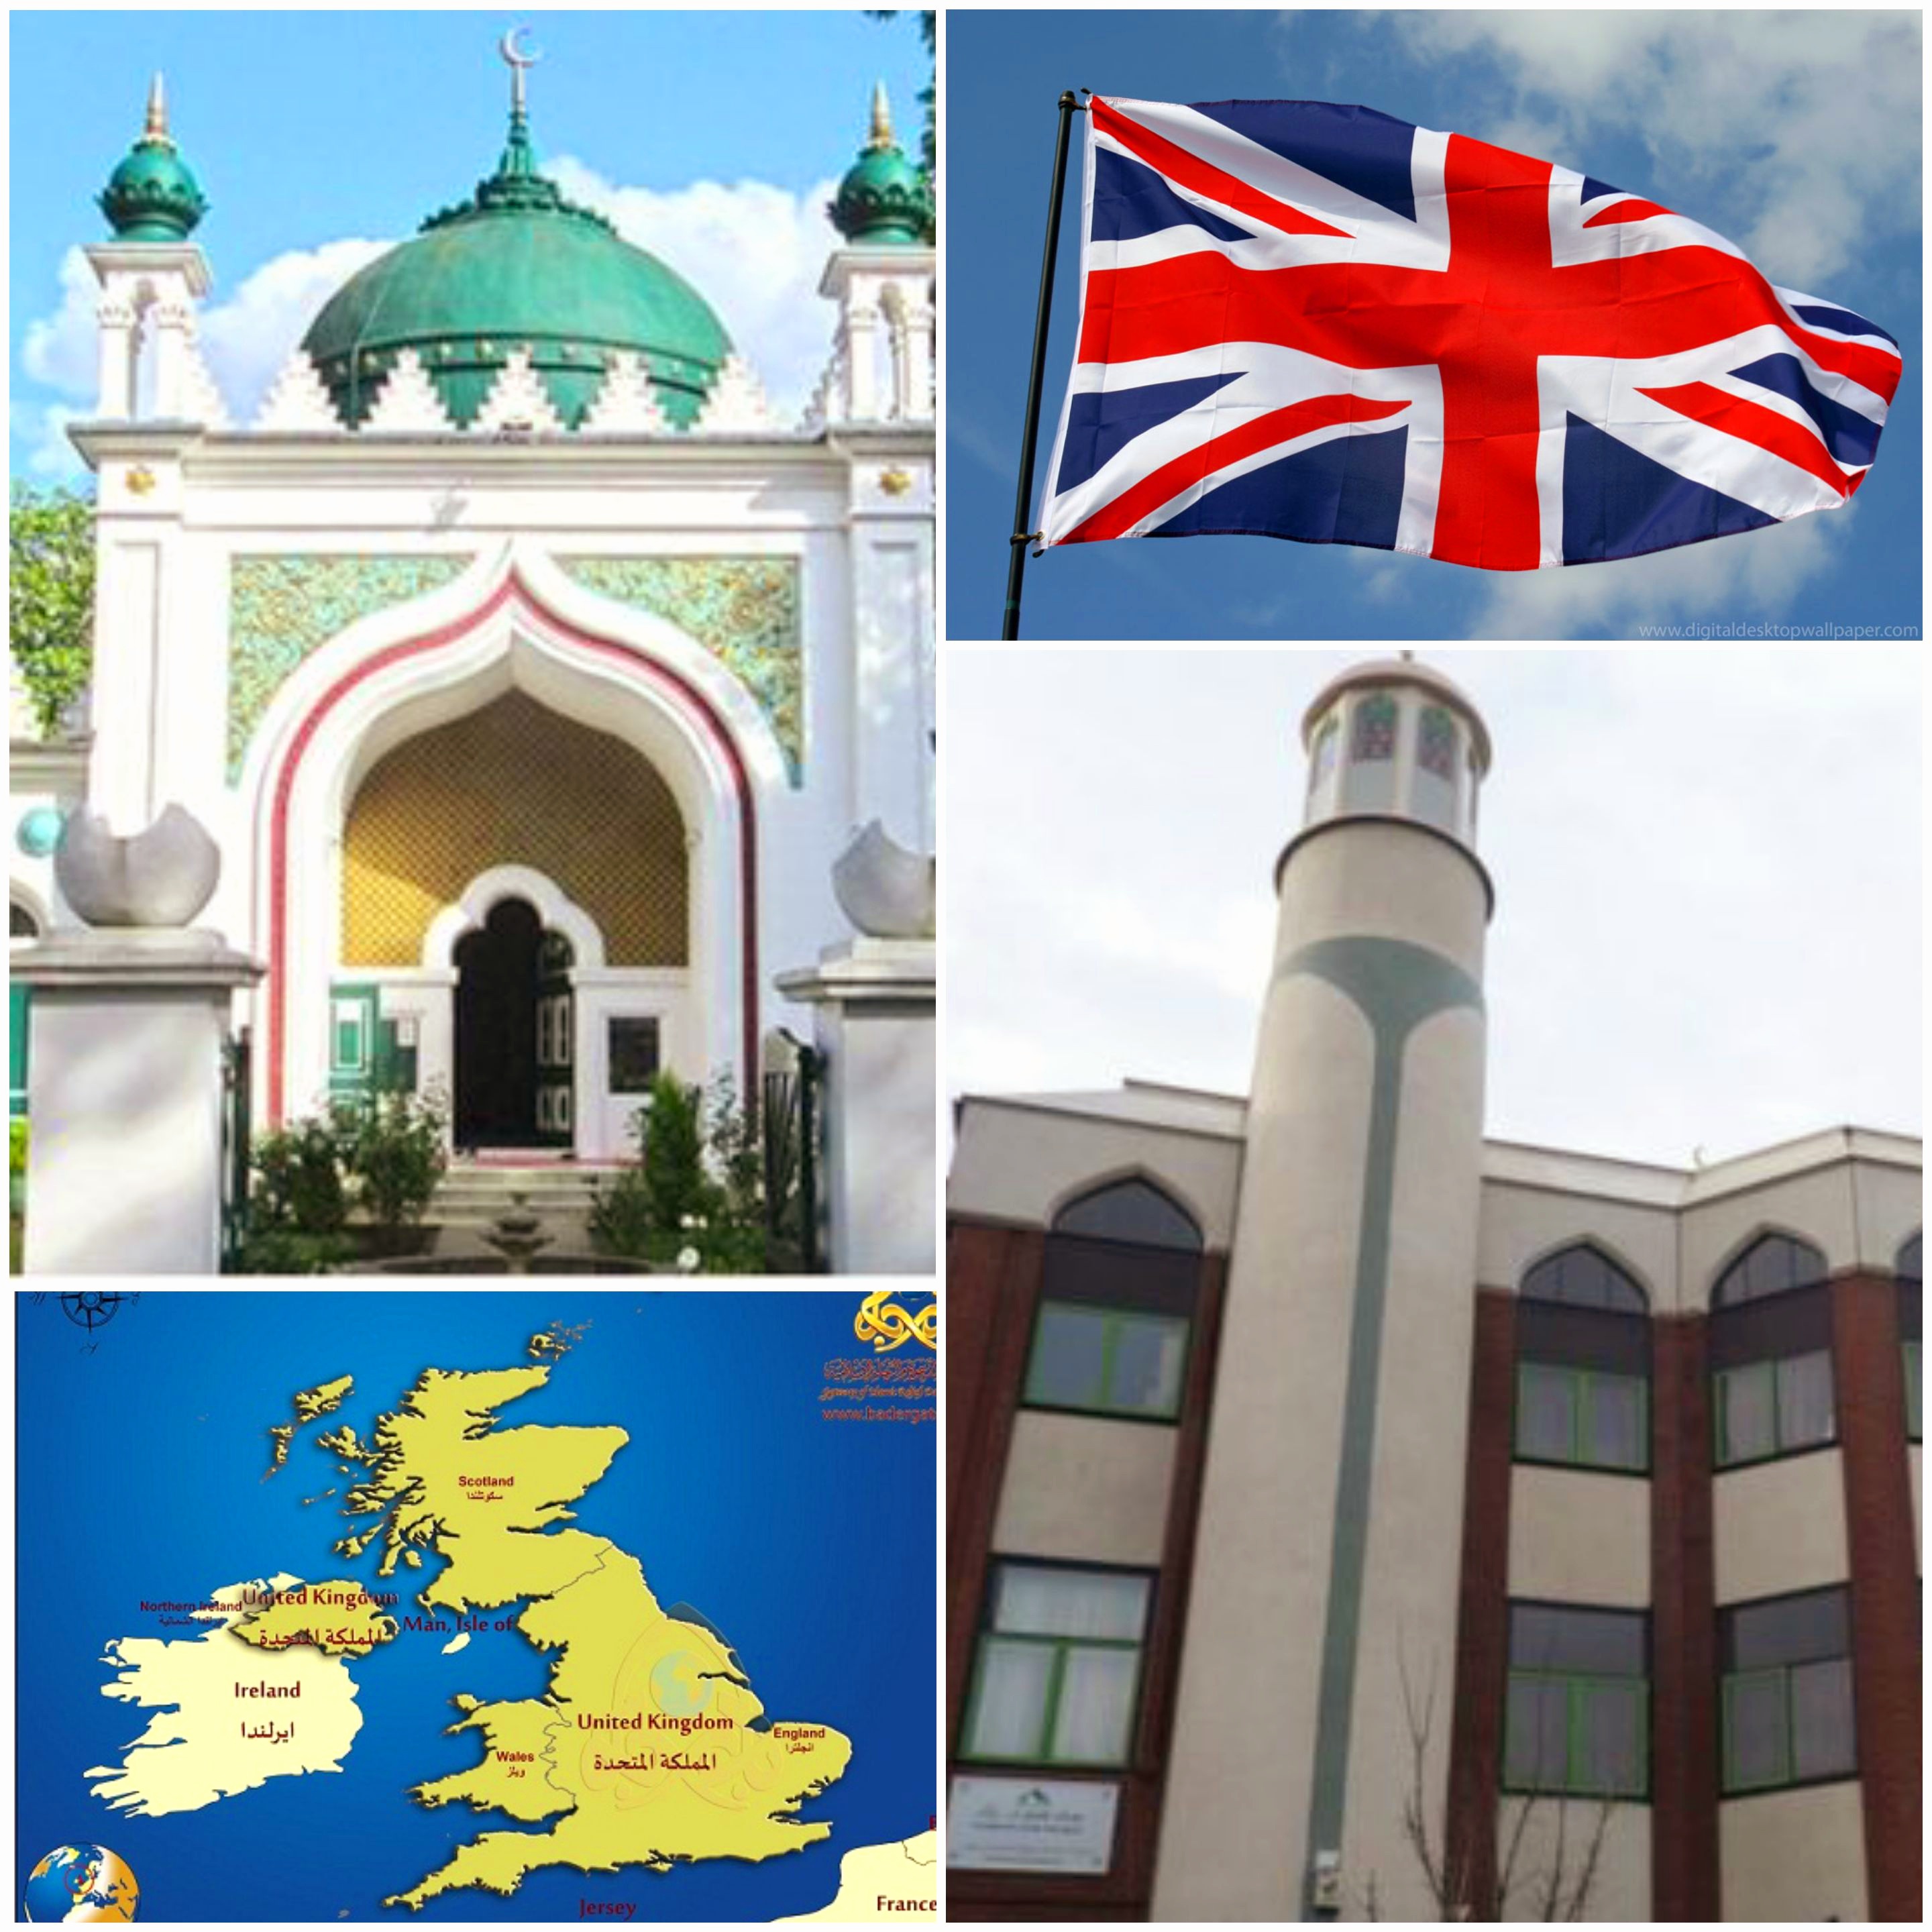 دليل جديد للحفاظ على أمن المساجد وروادها أعده المجلس الإسلامي البريطاني 